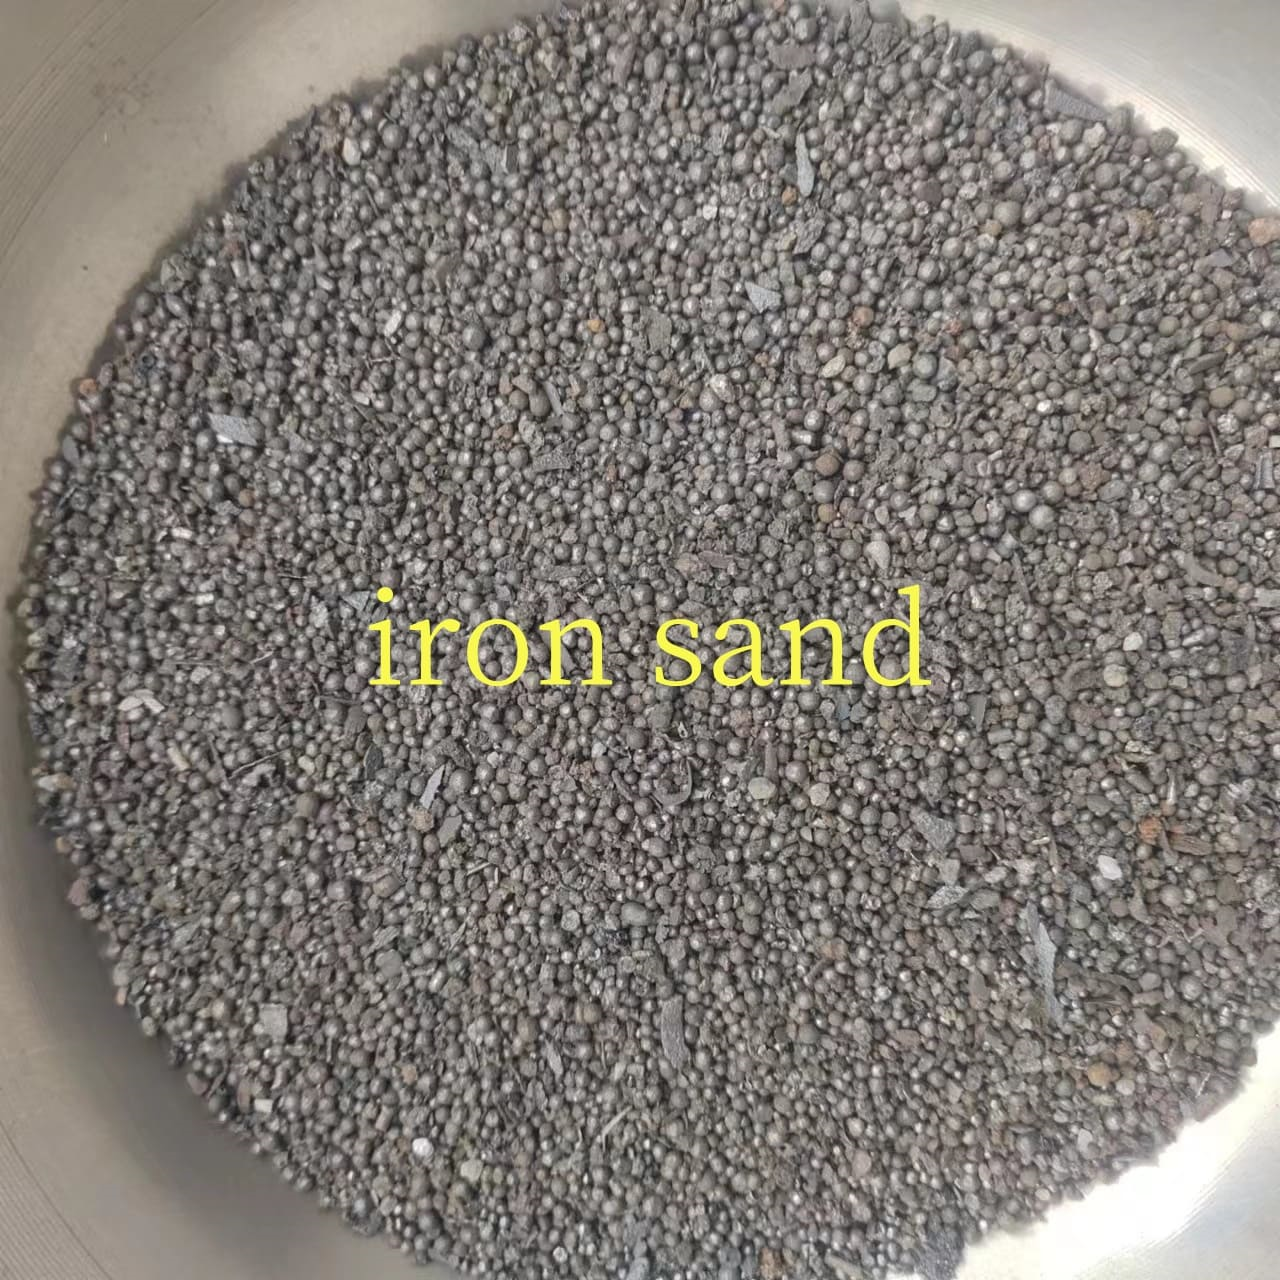 iron sand